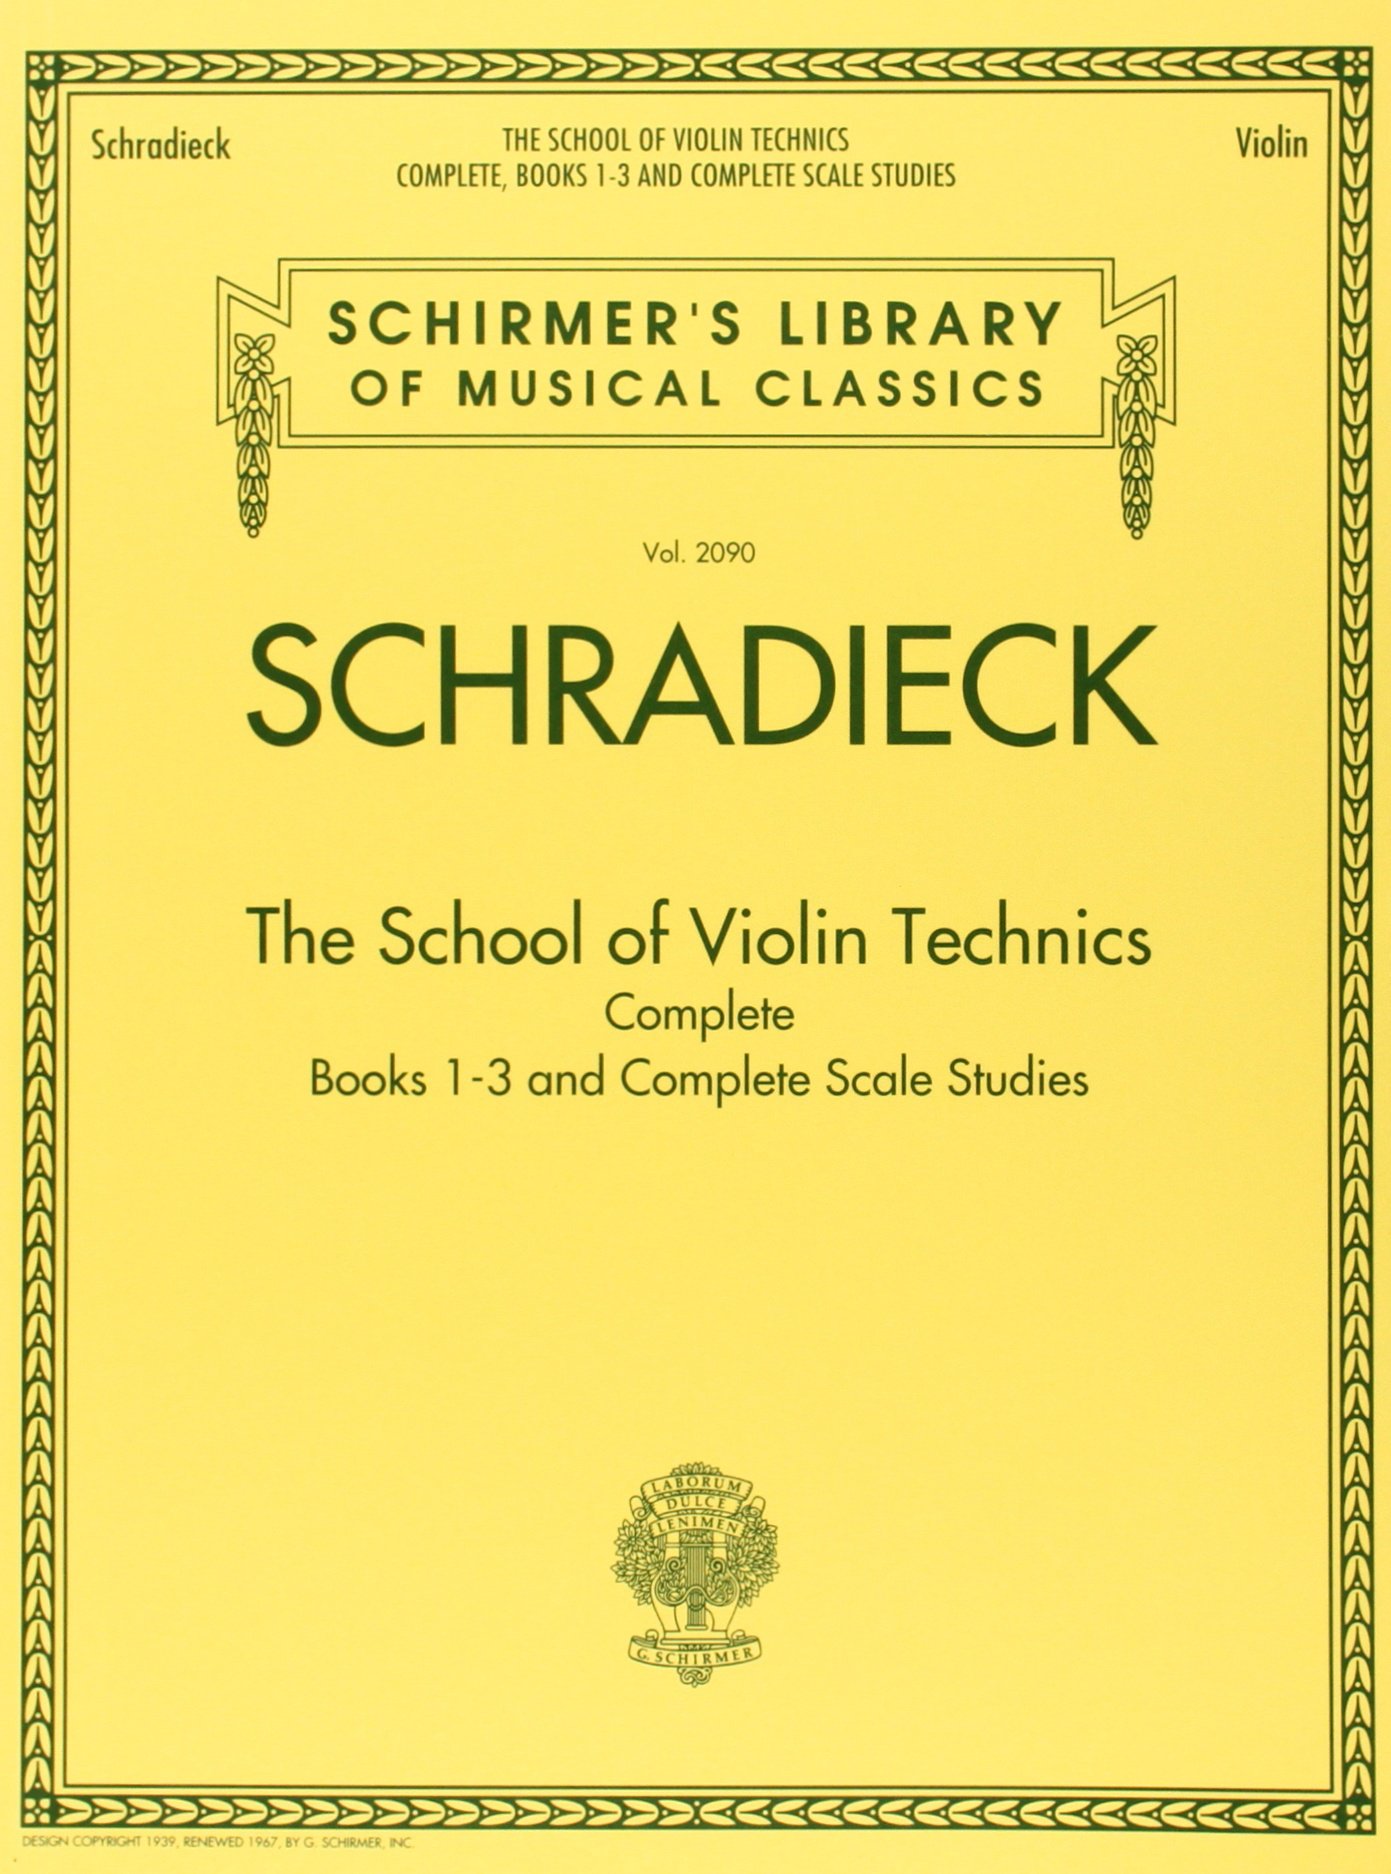 School For Violin Technics: Complete 